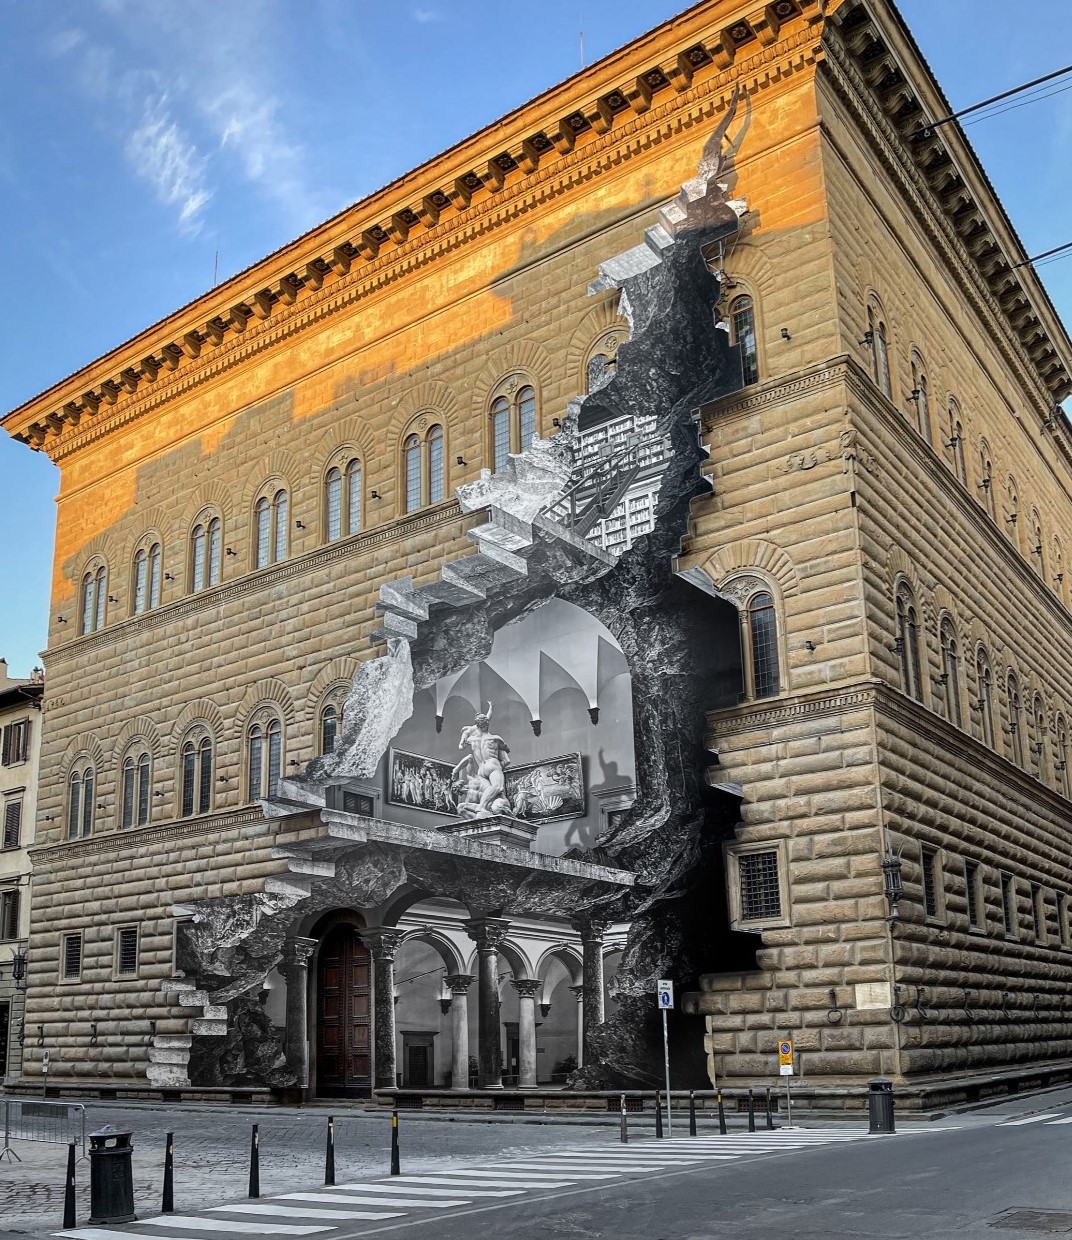 111 4 - Նկարիչը «քանդեց» Ֆլորենցիայի Palazzo Strozzi պատը